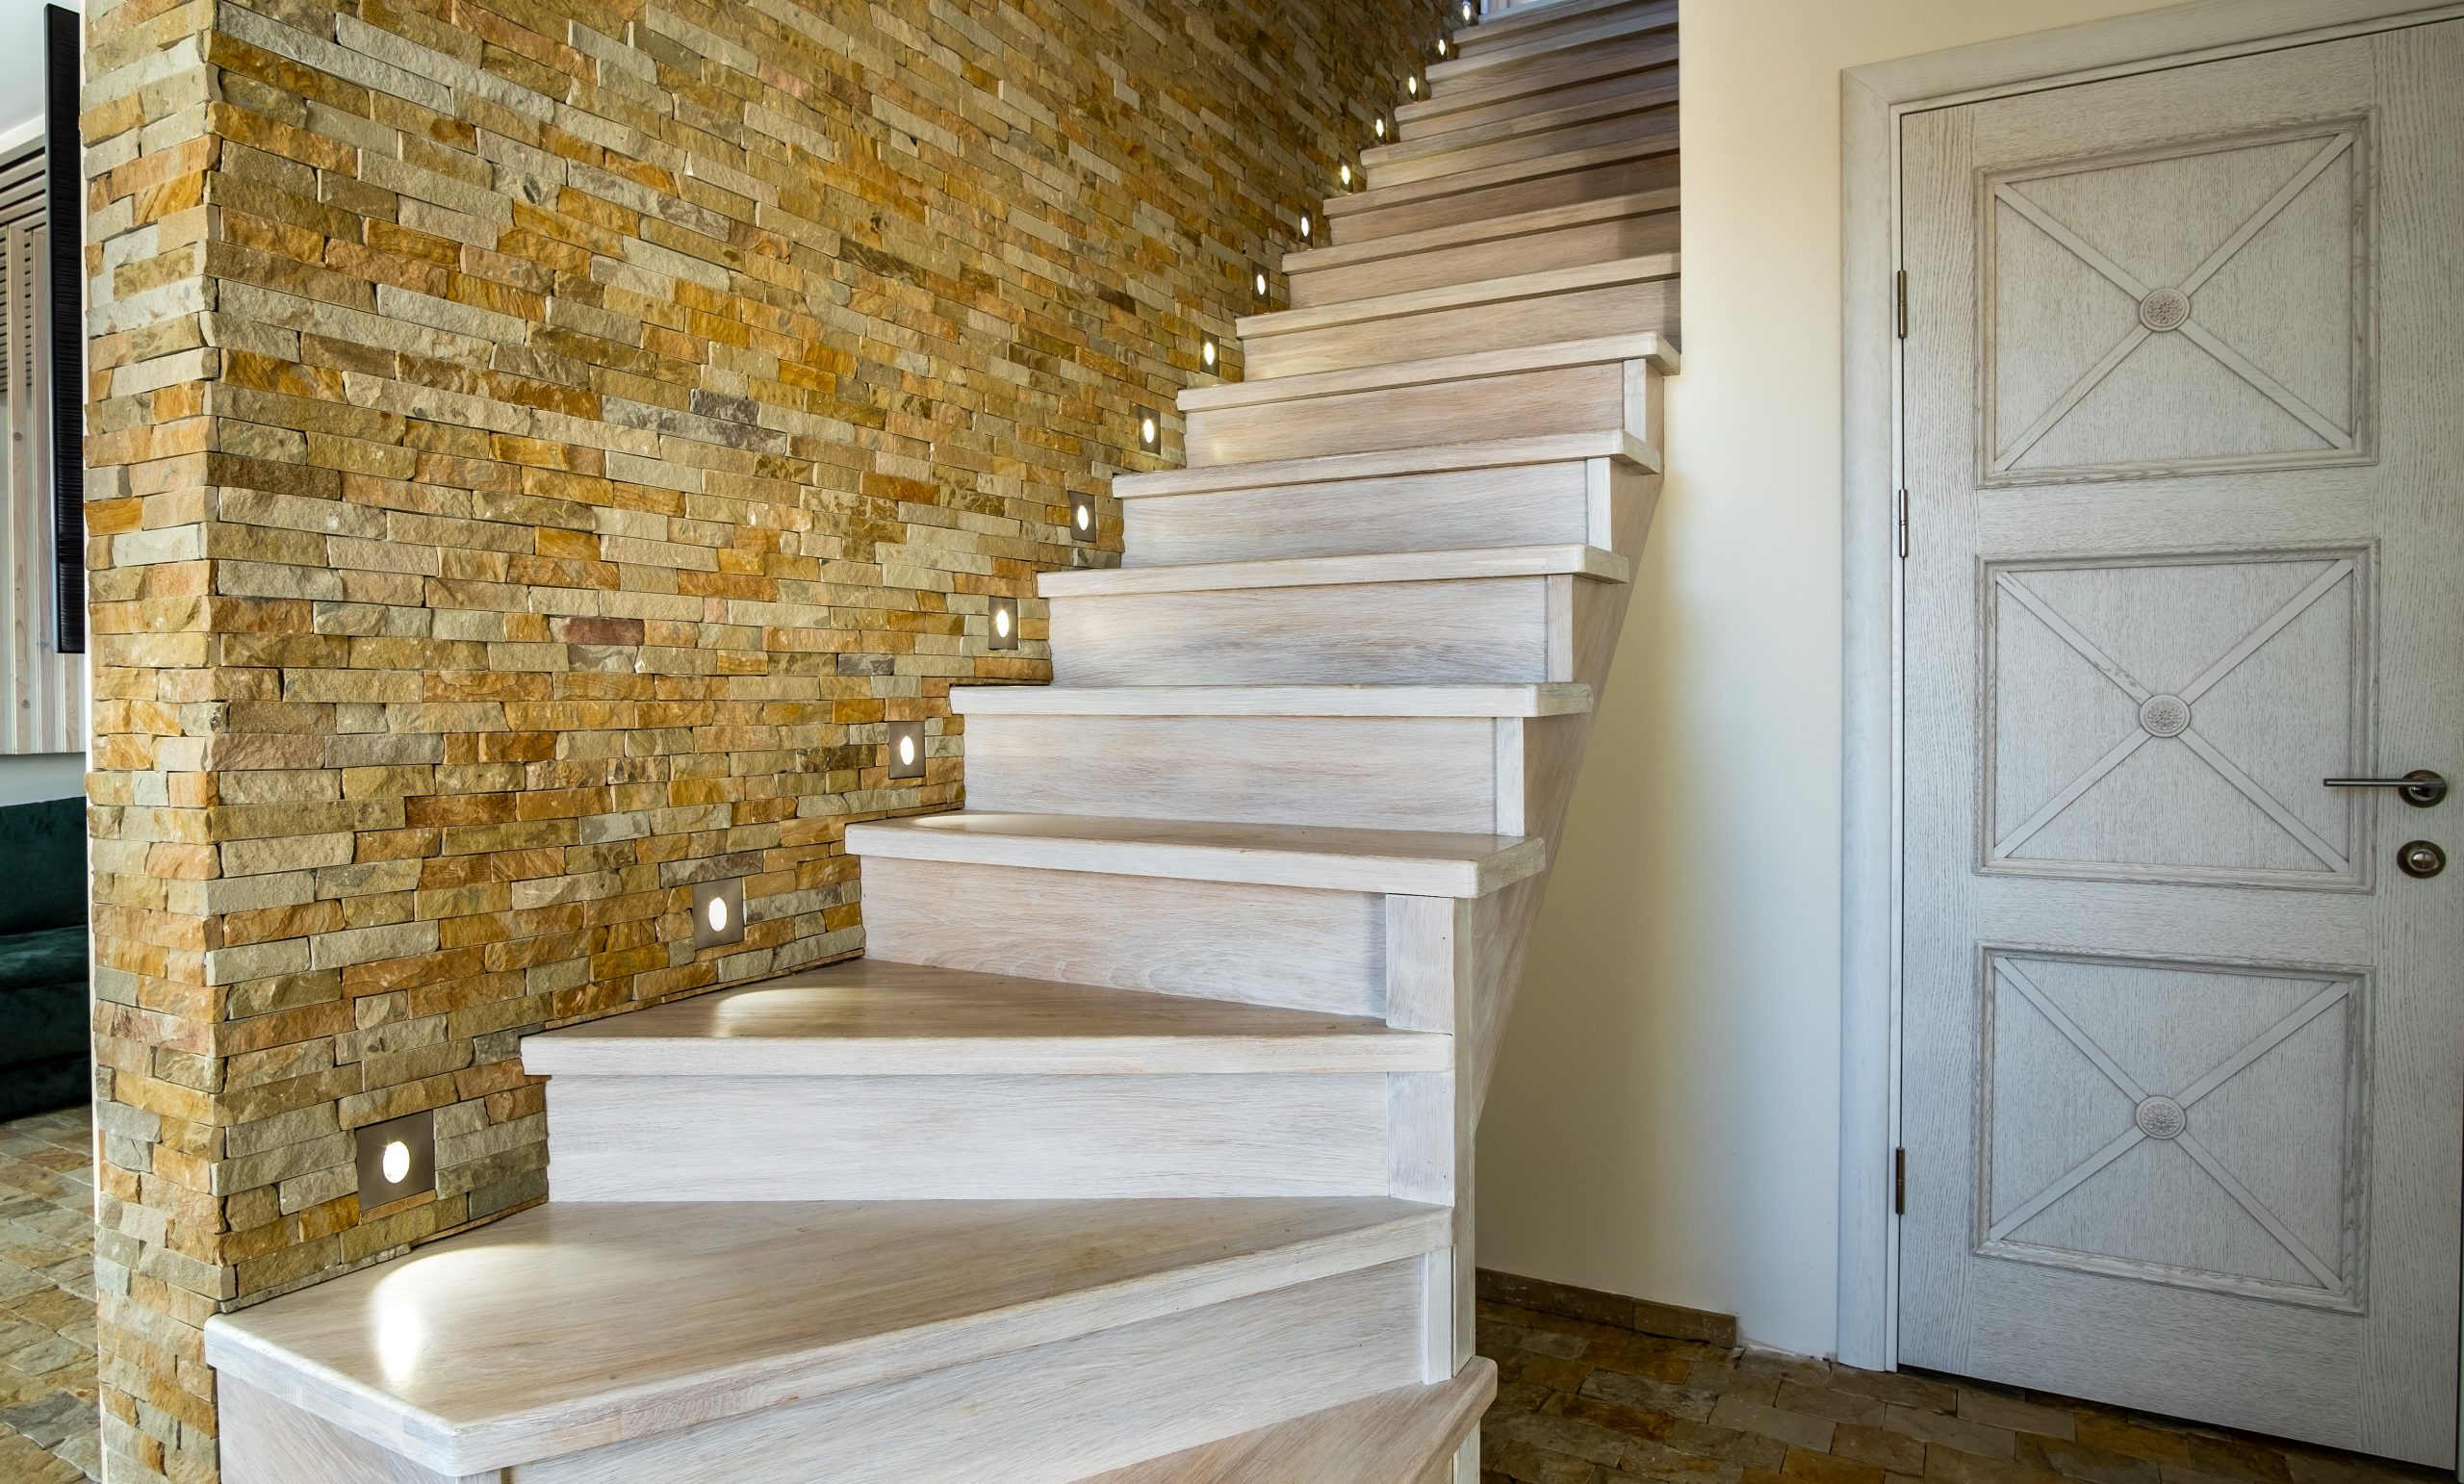 Barrière escalier - découvrez les possibilités pour sécuriser votre escalier